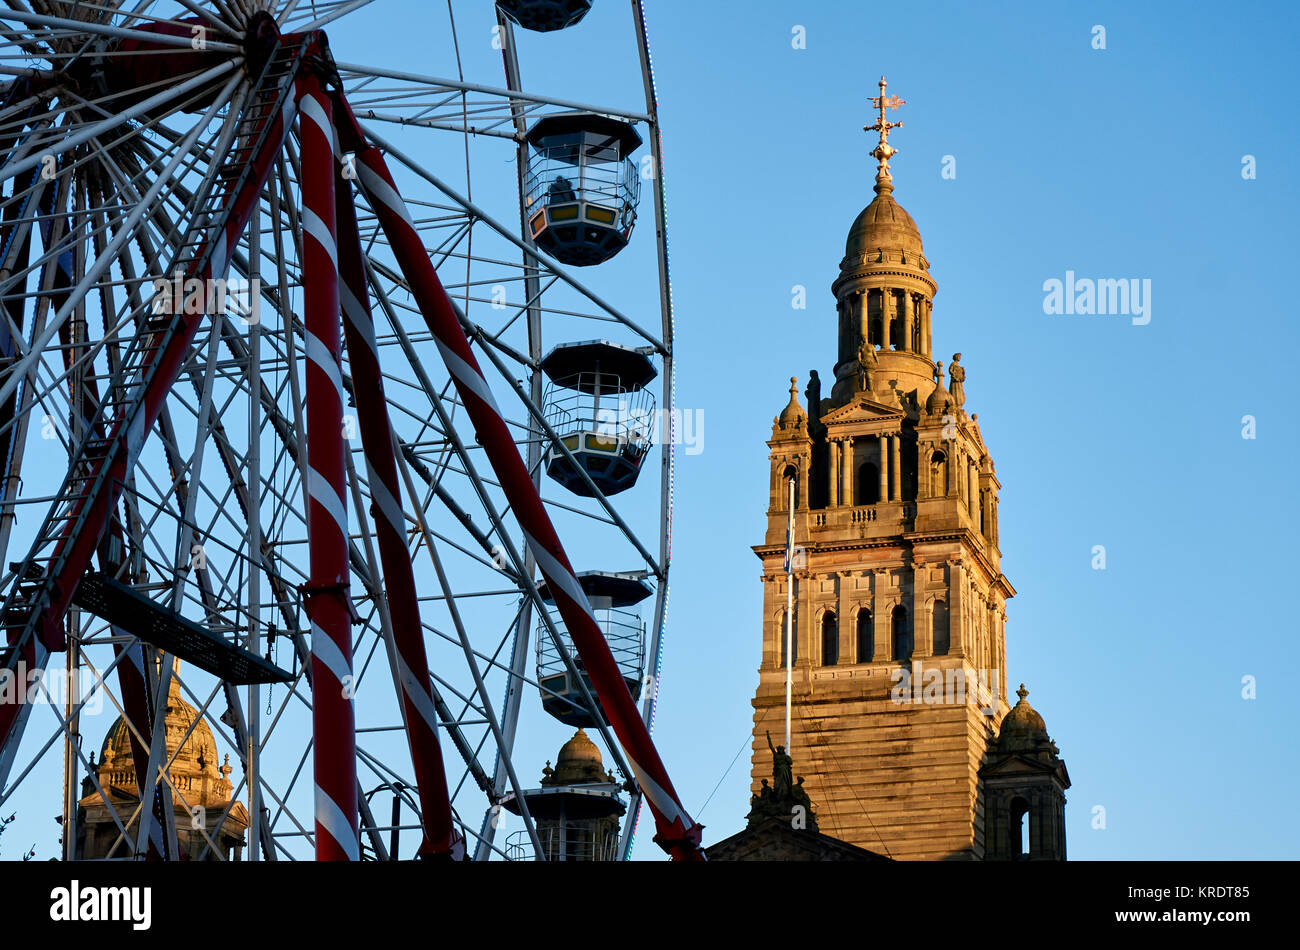 Turm der Glasgow City Chambers Gebäude mit dem großen Rad im Vordergrund. Stockfoto